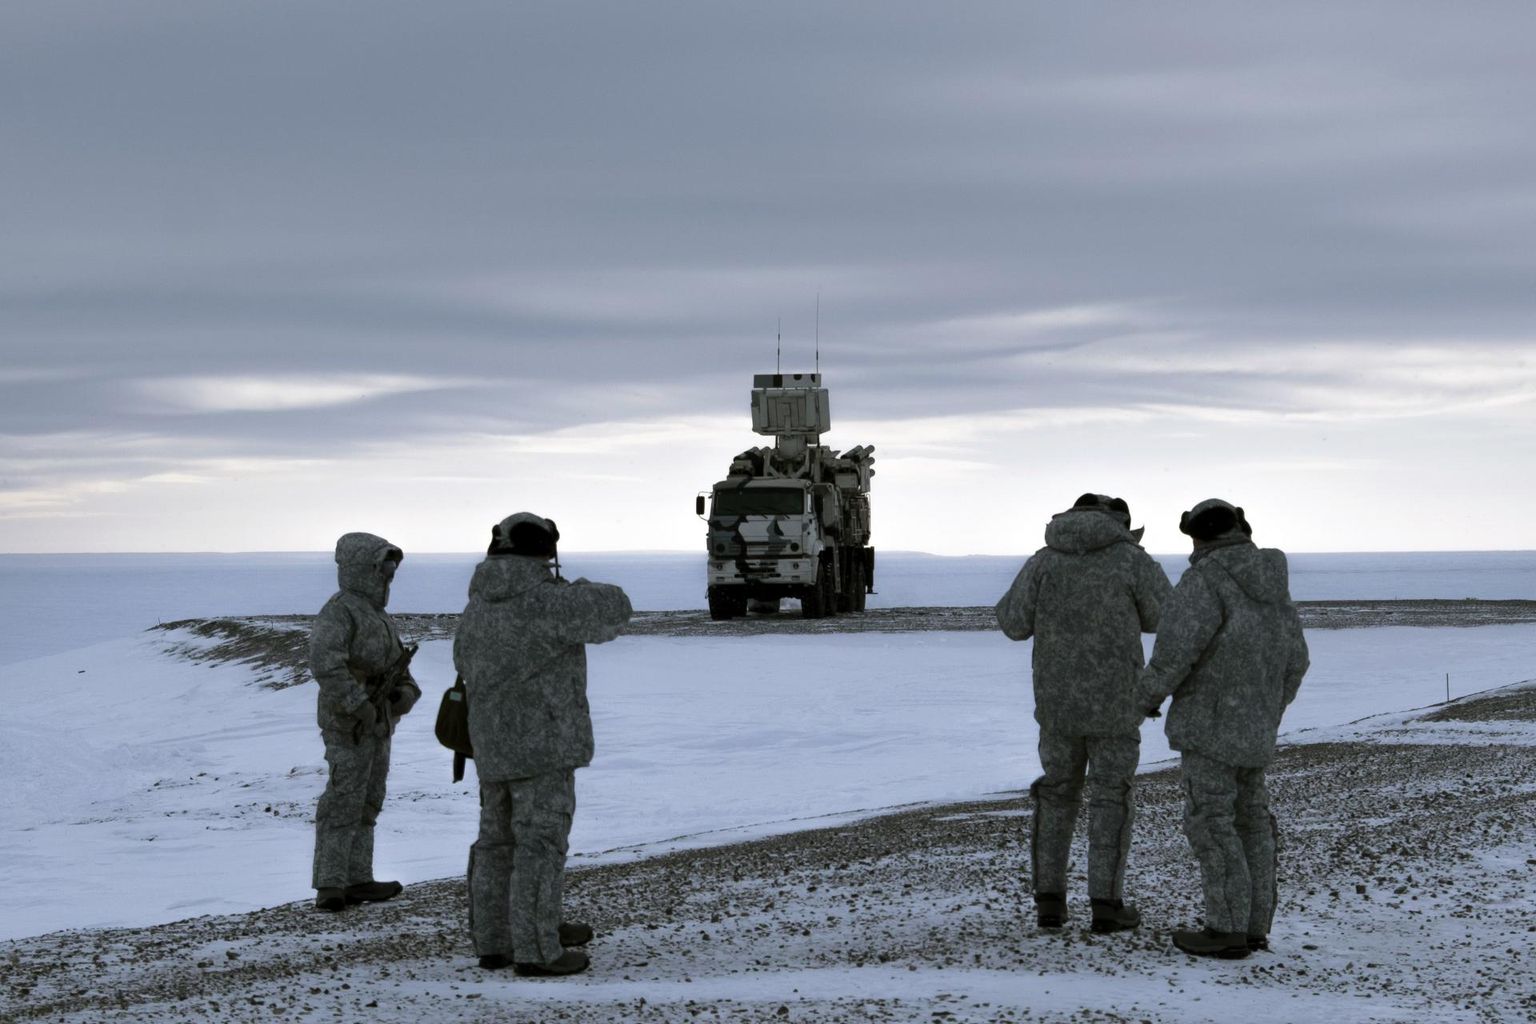 Arktika sõjaväeringkonna loonud Venemaa on piirkonnas suurendanud õhu-, mereväe ja rannakaitse võimekust. 